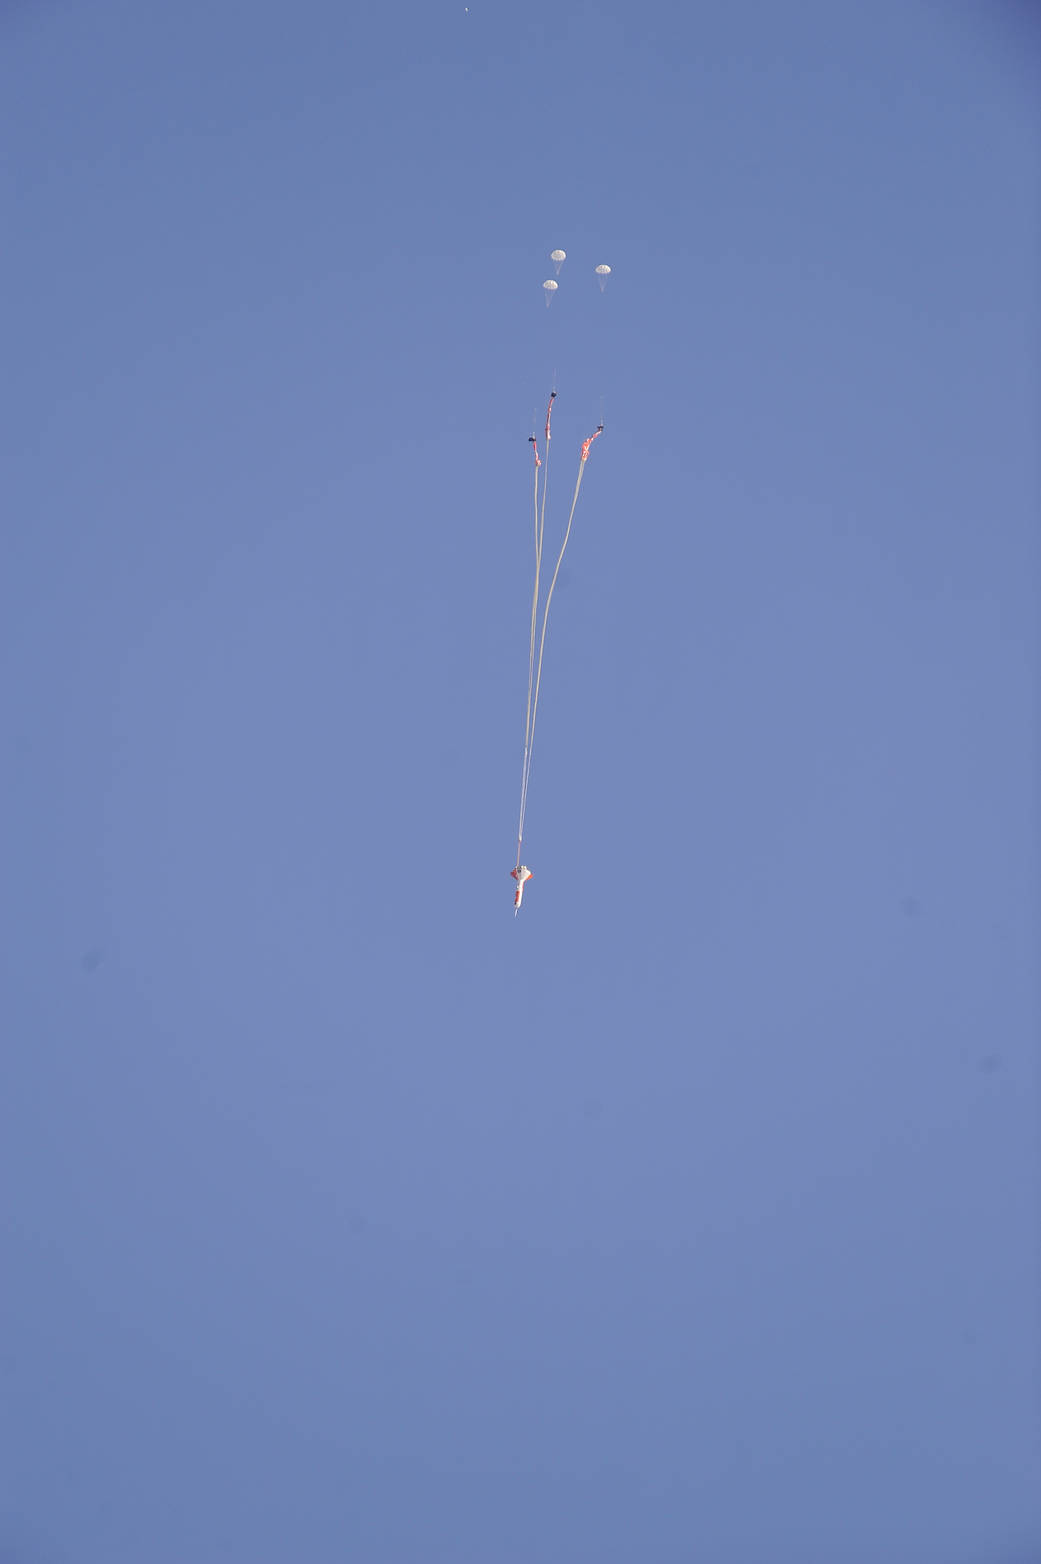 Aug. 28, 2012, Orion Parachute Test